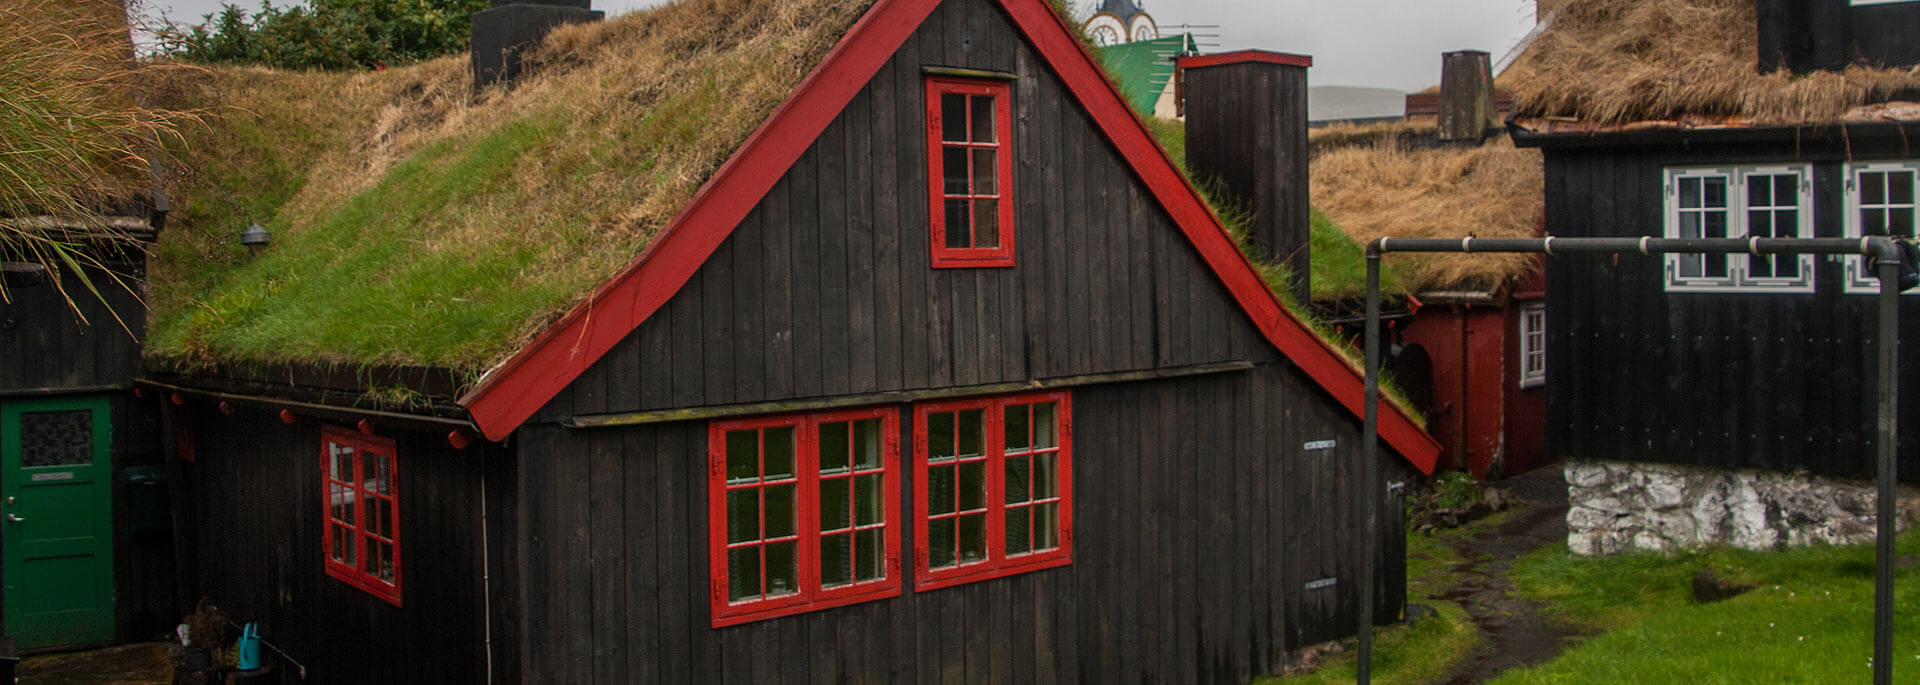 Fotos: Spaziergang durch Tórshavn, Hauptstadt der Färöer-Inseln